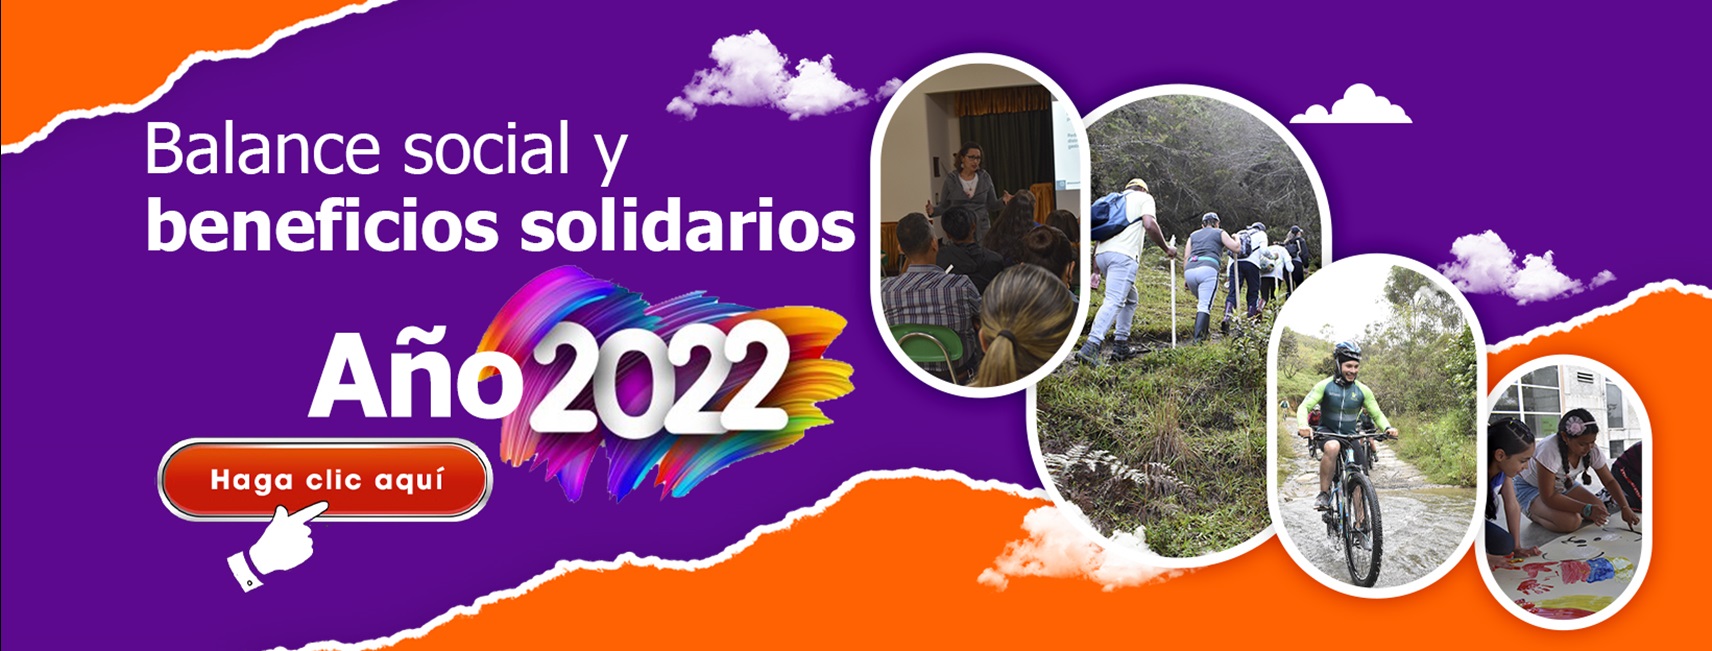 Banner balace social y neneficios solidarios 2022